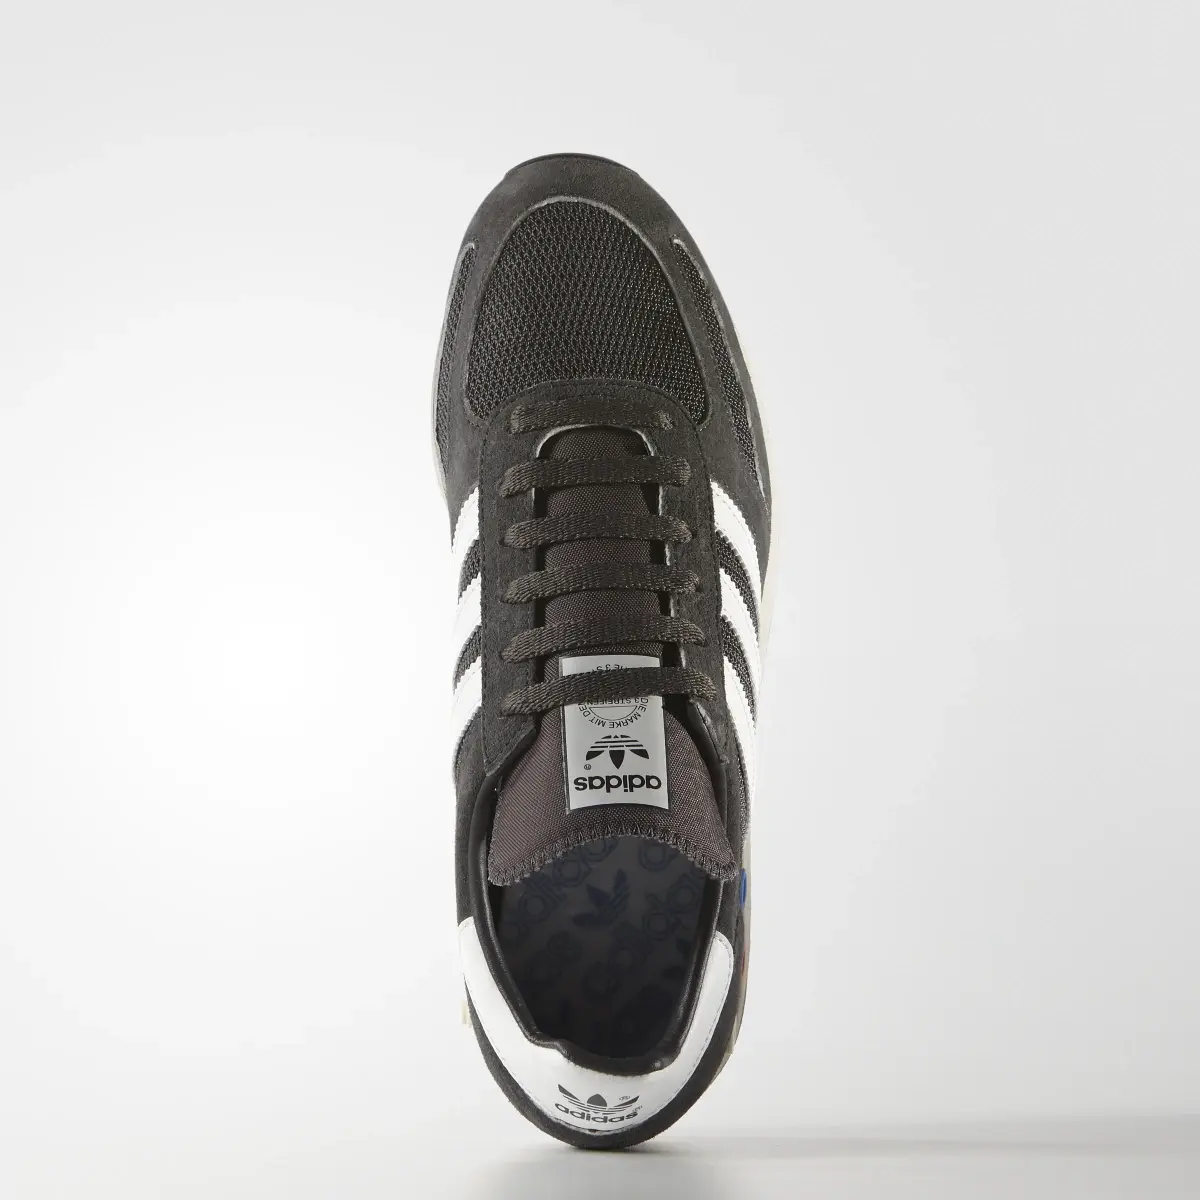 Adidas LA Trainer OG Shoes. 2